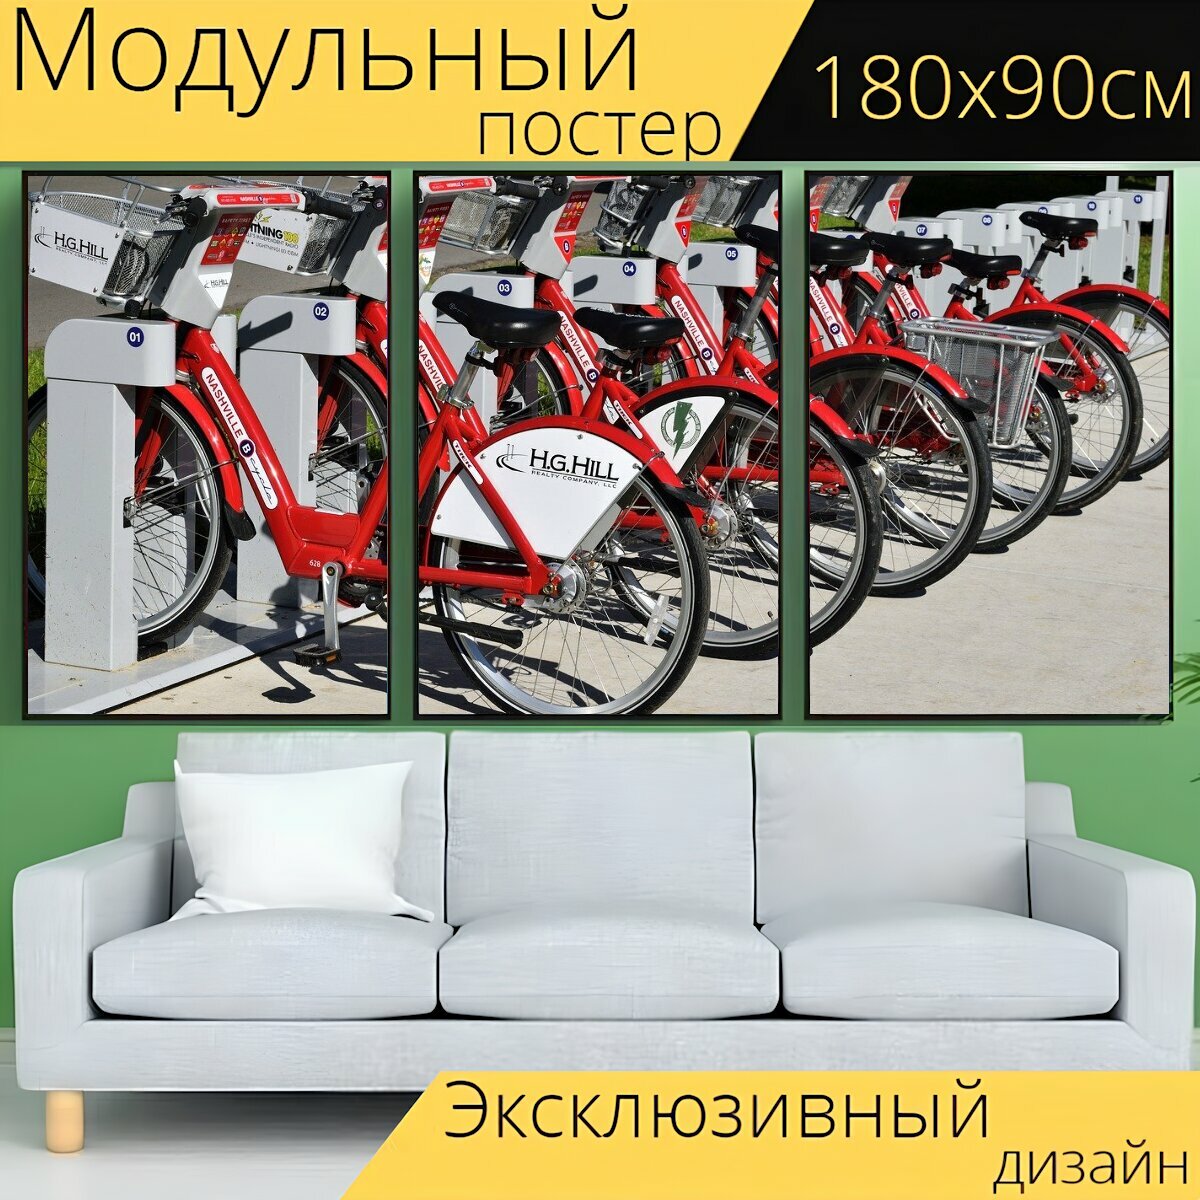 Модульный постер "Прокат велосипедов, велосипеды, арендовать" 180 x 90 см. для интерьера